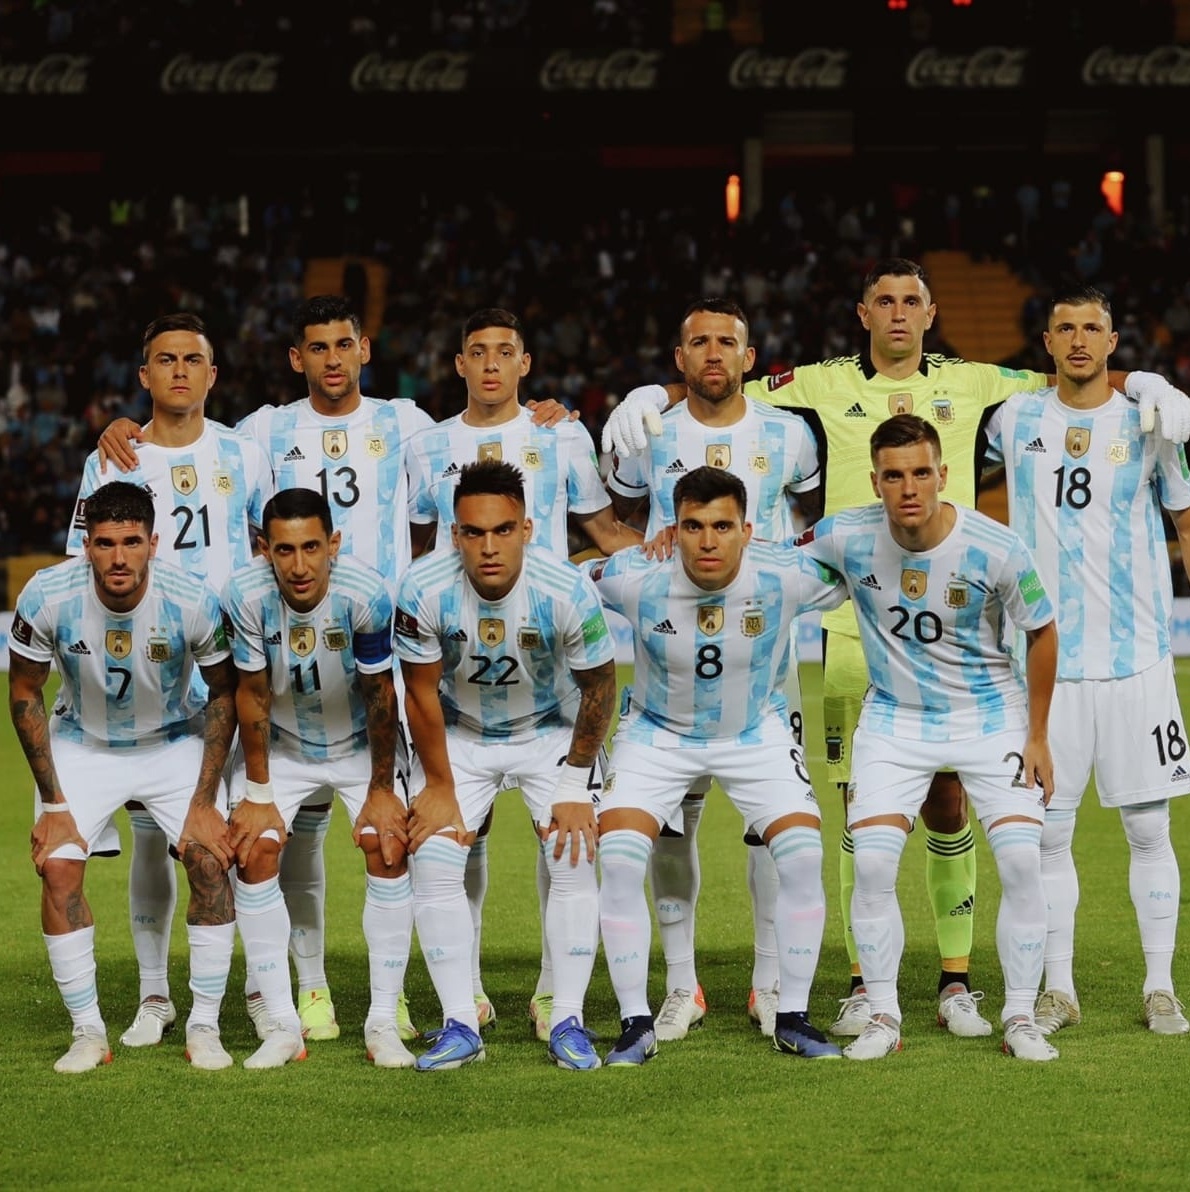 Fotos: jogadores cabeludos da Seleção Argentina - Superesportes